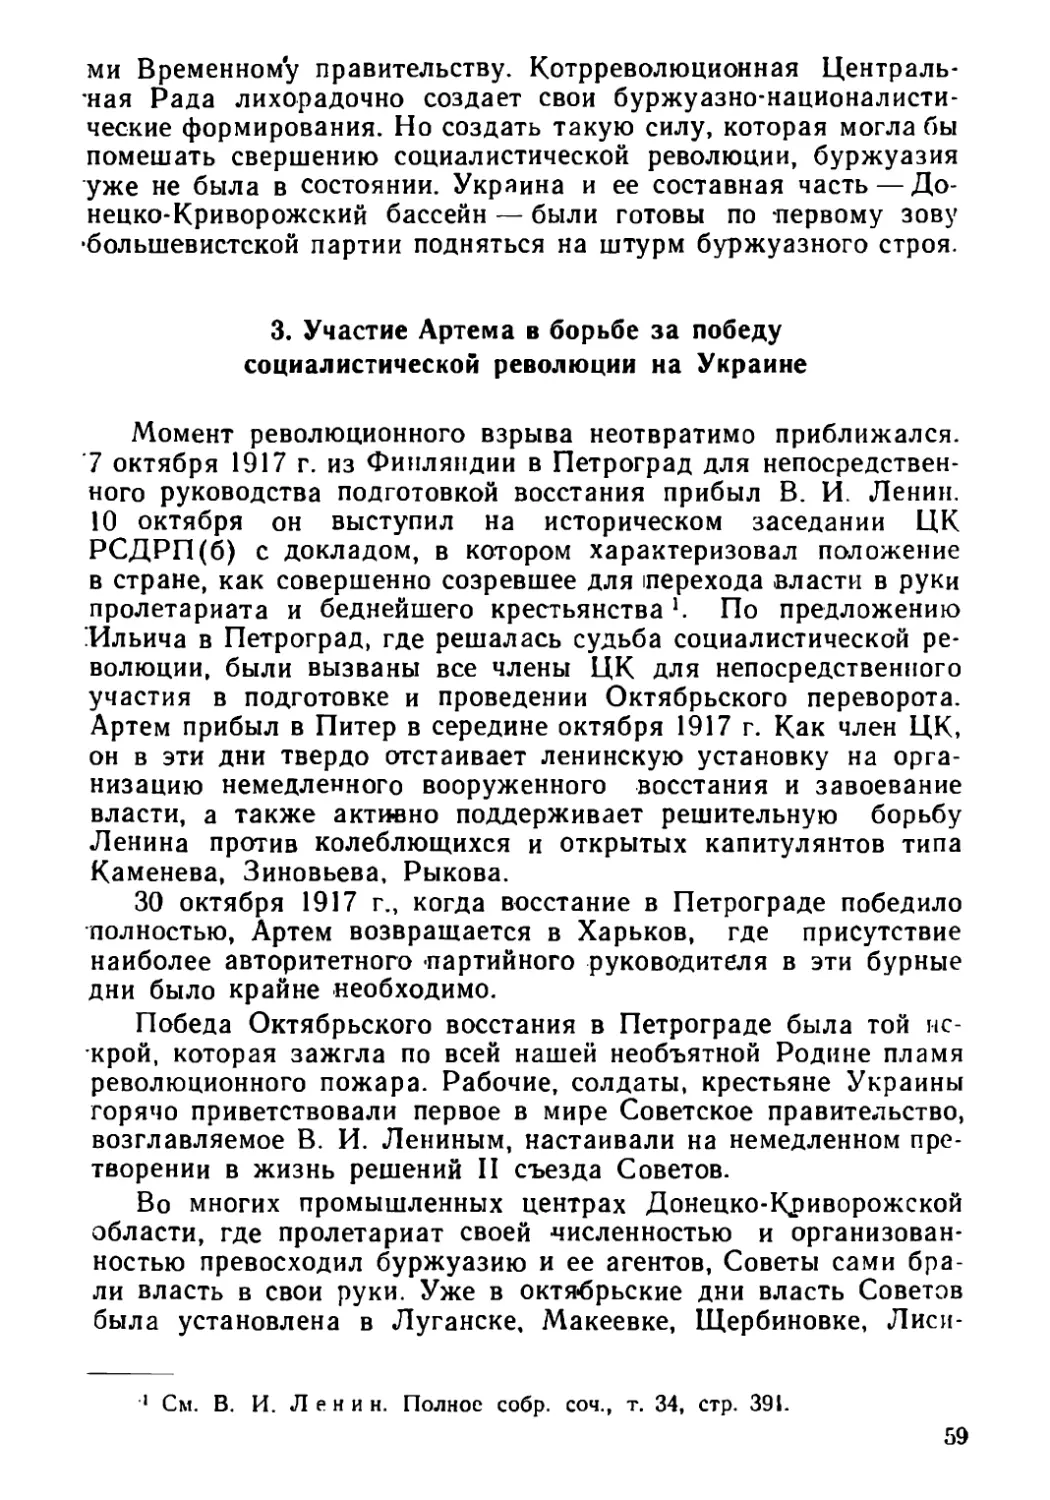 3. Участие Артема в борьбе за победу социалистической революции на Украине